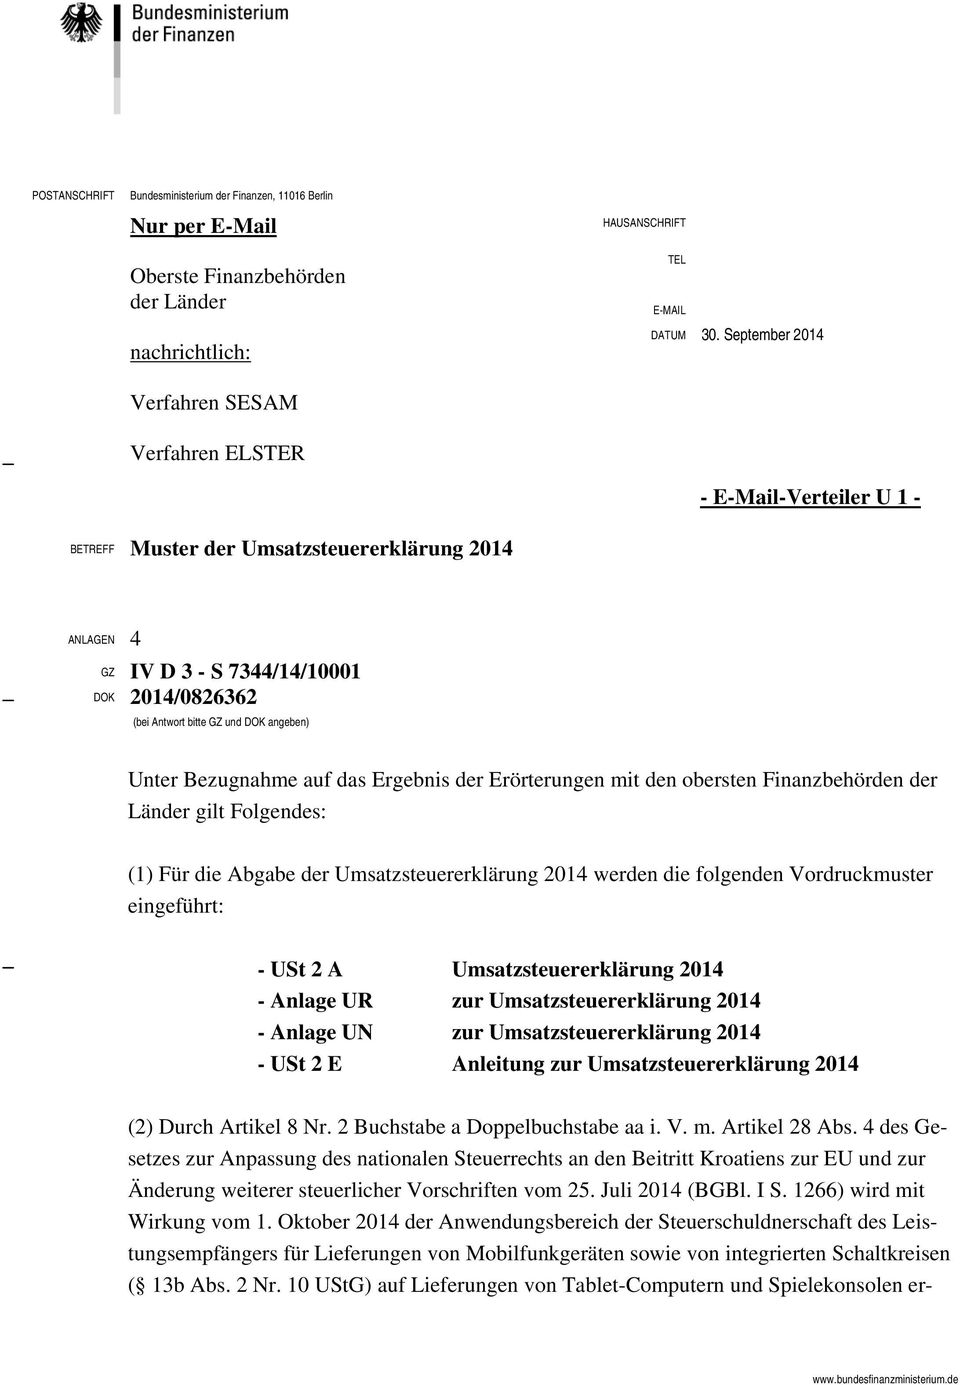 September 2014 - E-Mail-Verteiler U 1 - BETREFF Muster der Umsatzsteuererklärung 2014 ANLAGEN 4 GZ IV D 3 - S 7344/14/10001 DOK 2014/0826362 (bei Antwort bitte GZ und DOK angeben) Unter Bezugnahme